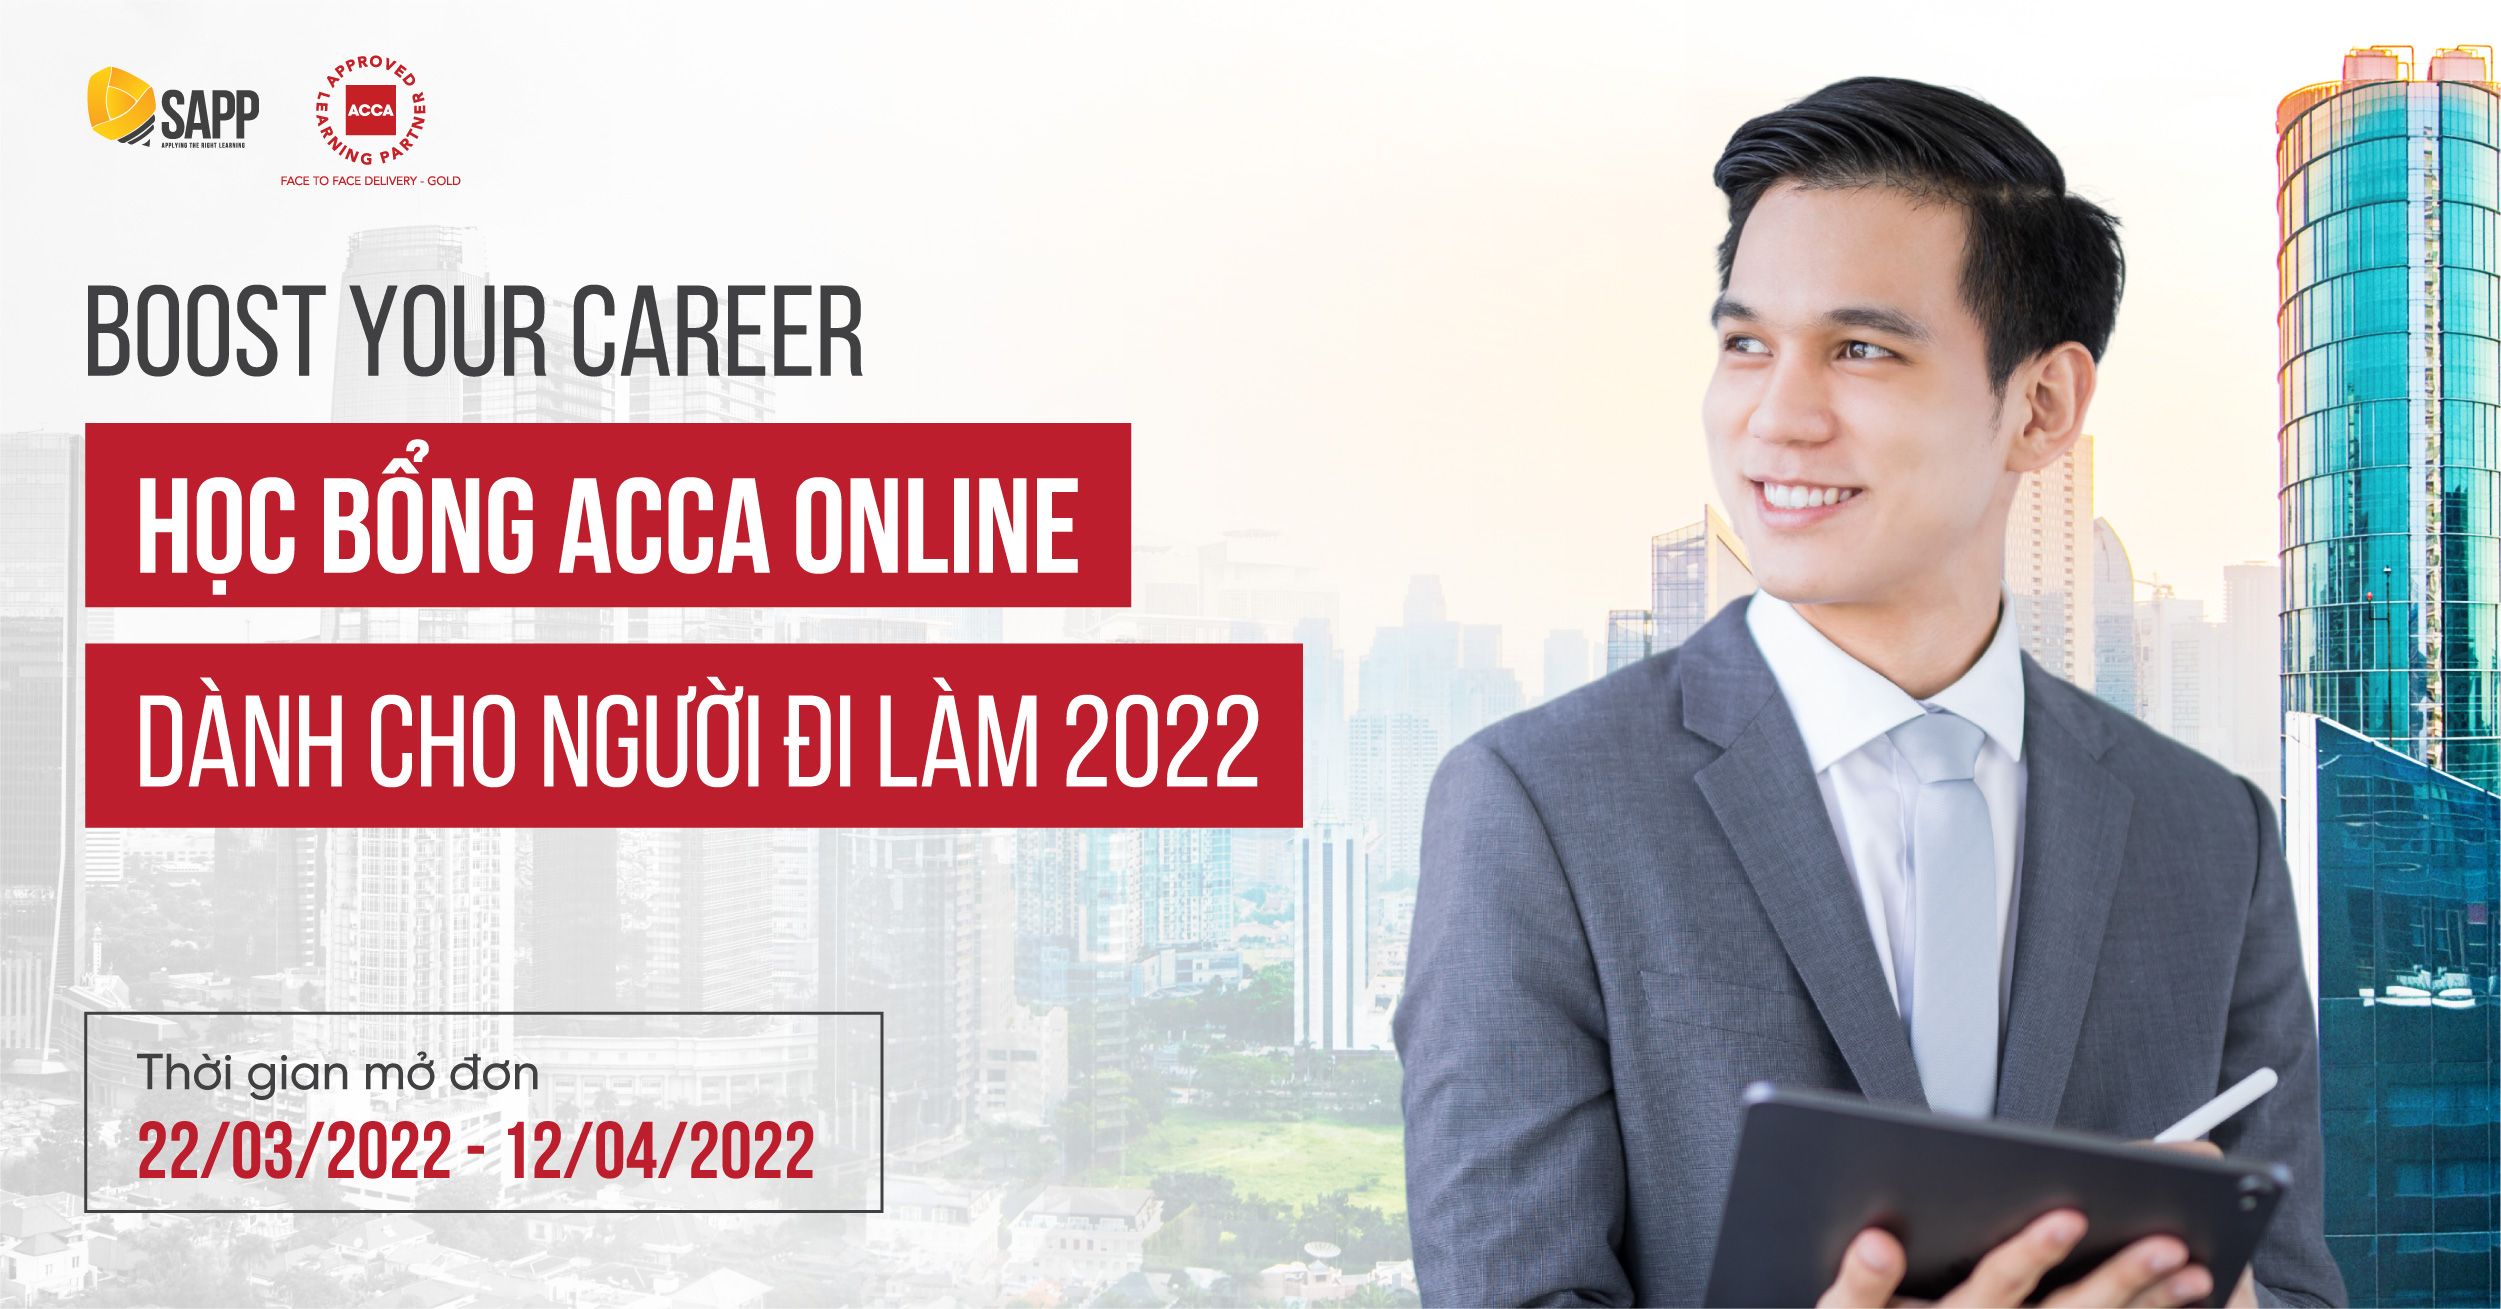 Học bổng ACCA Online dành cho người đi làm - Boost Your Career 2022